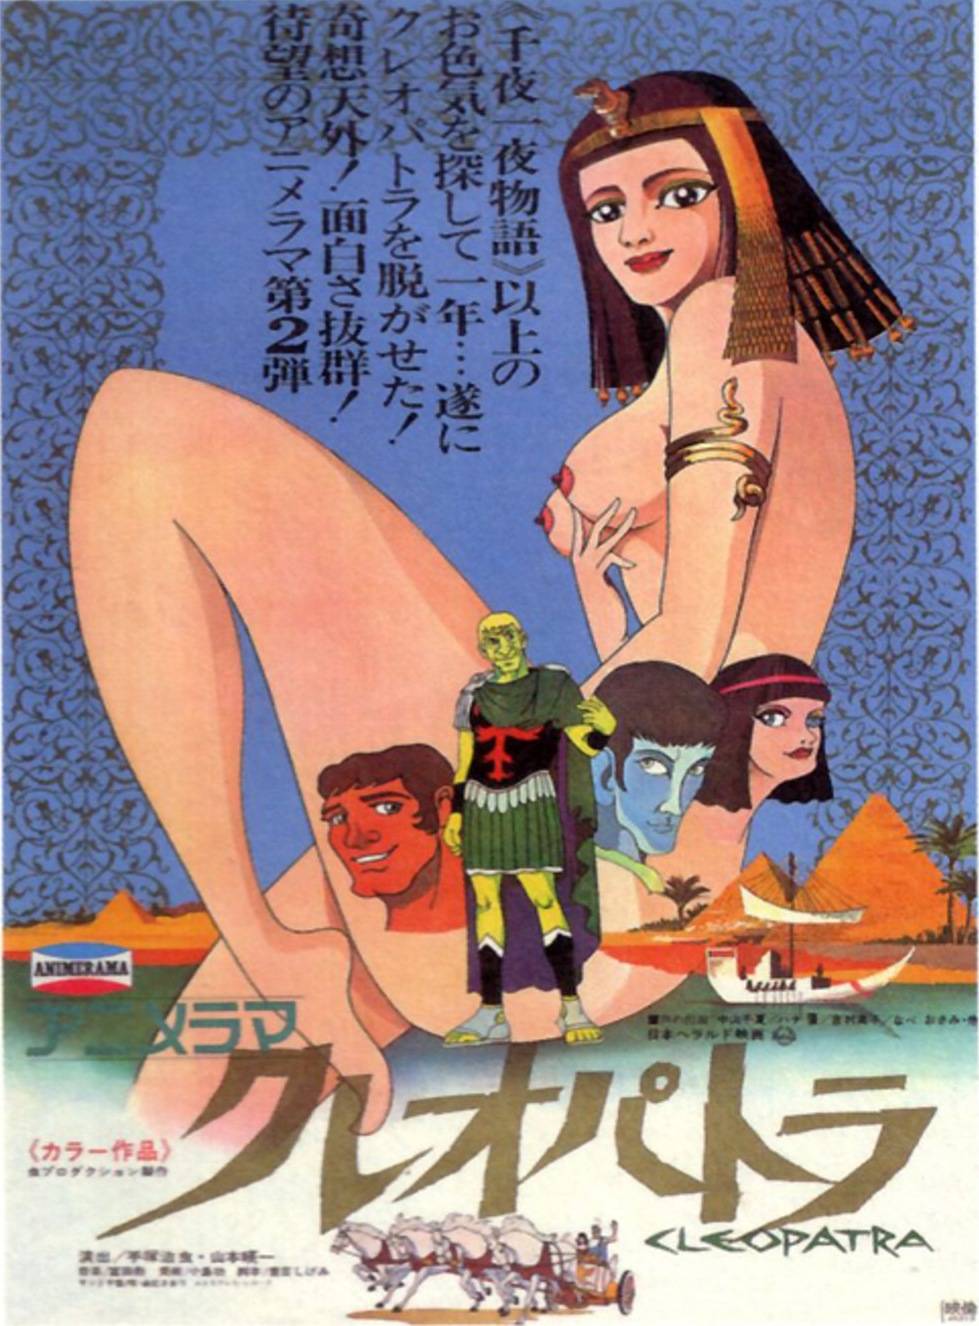 Cleopatra: Queen of Sex (1977) Kureopatora